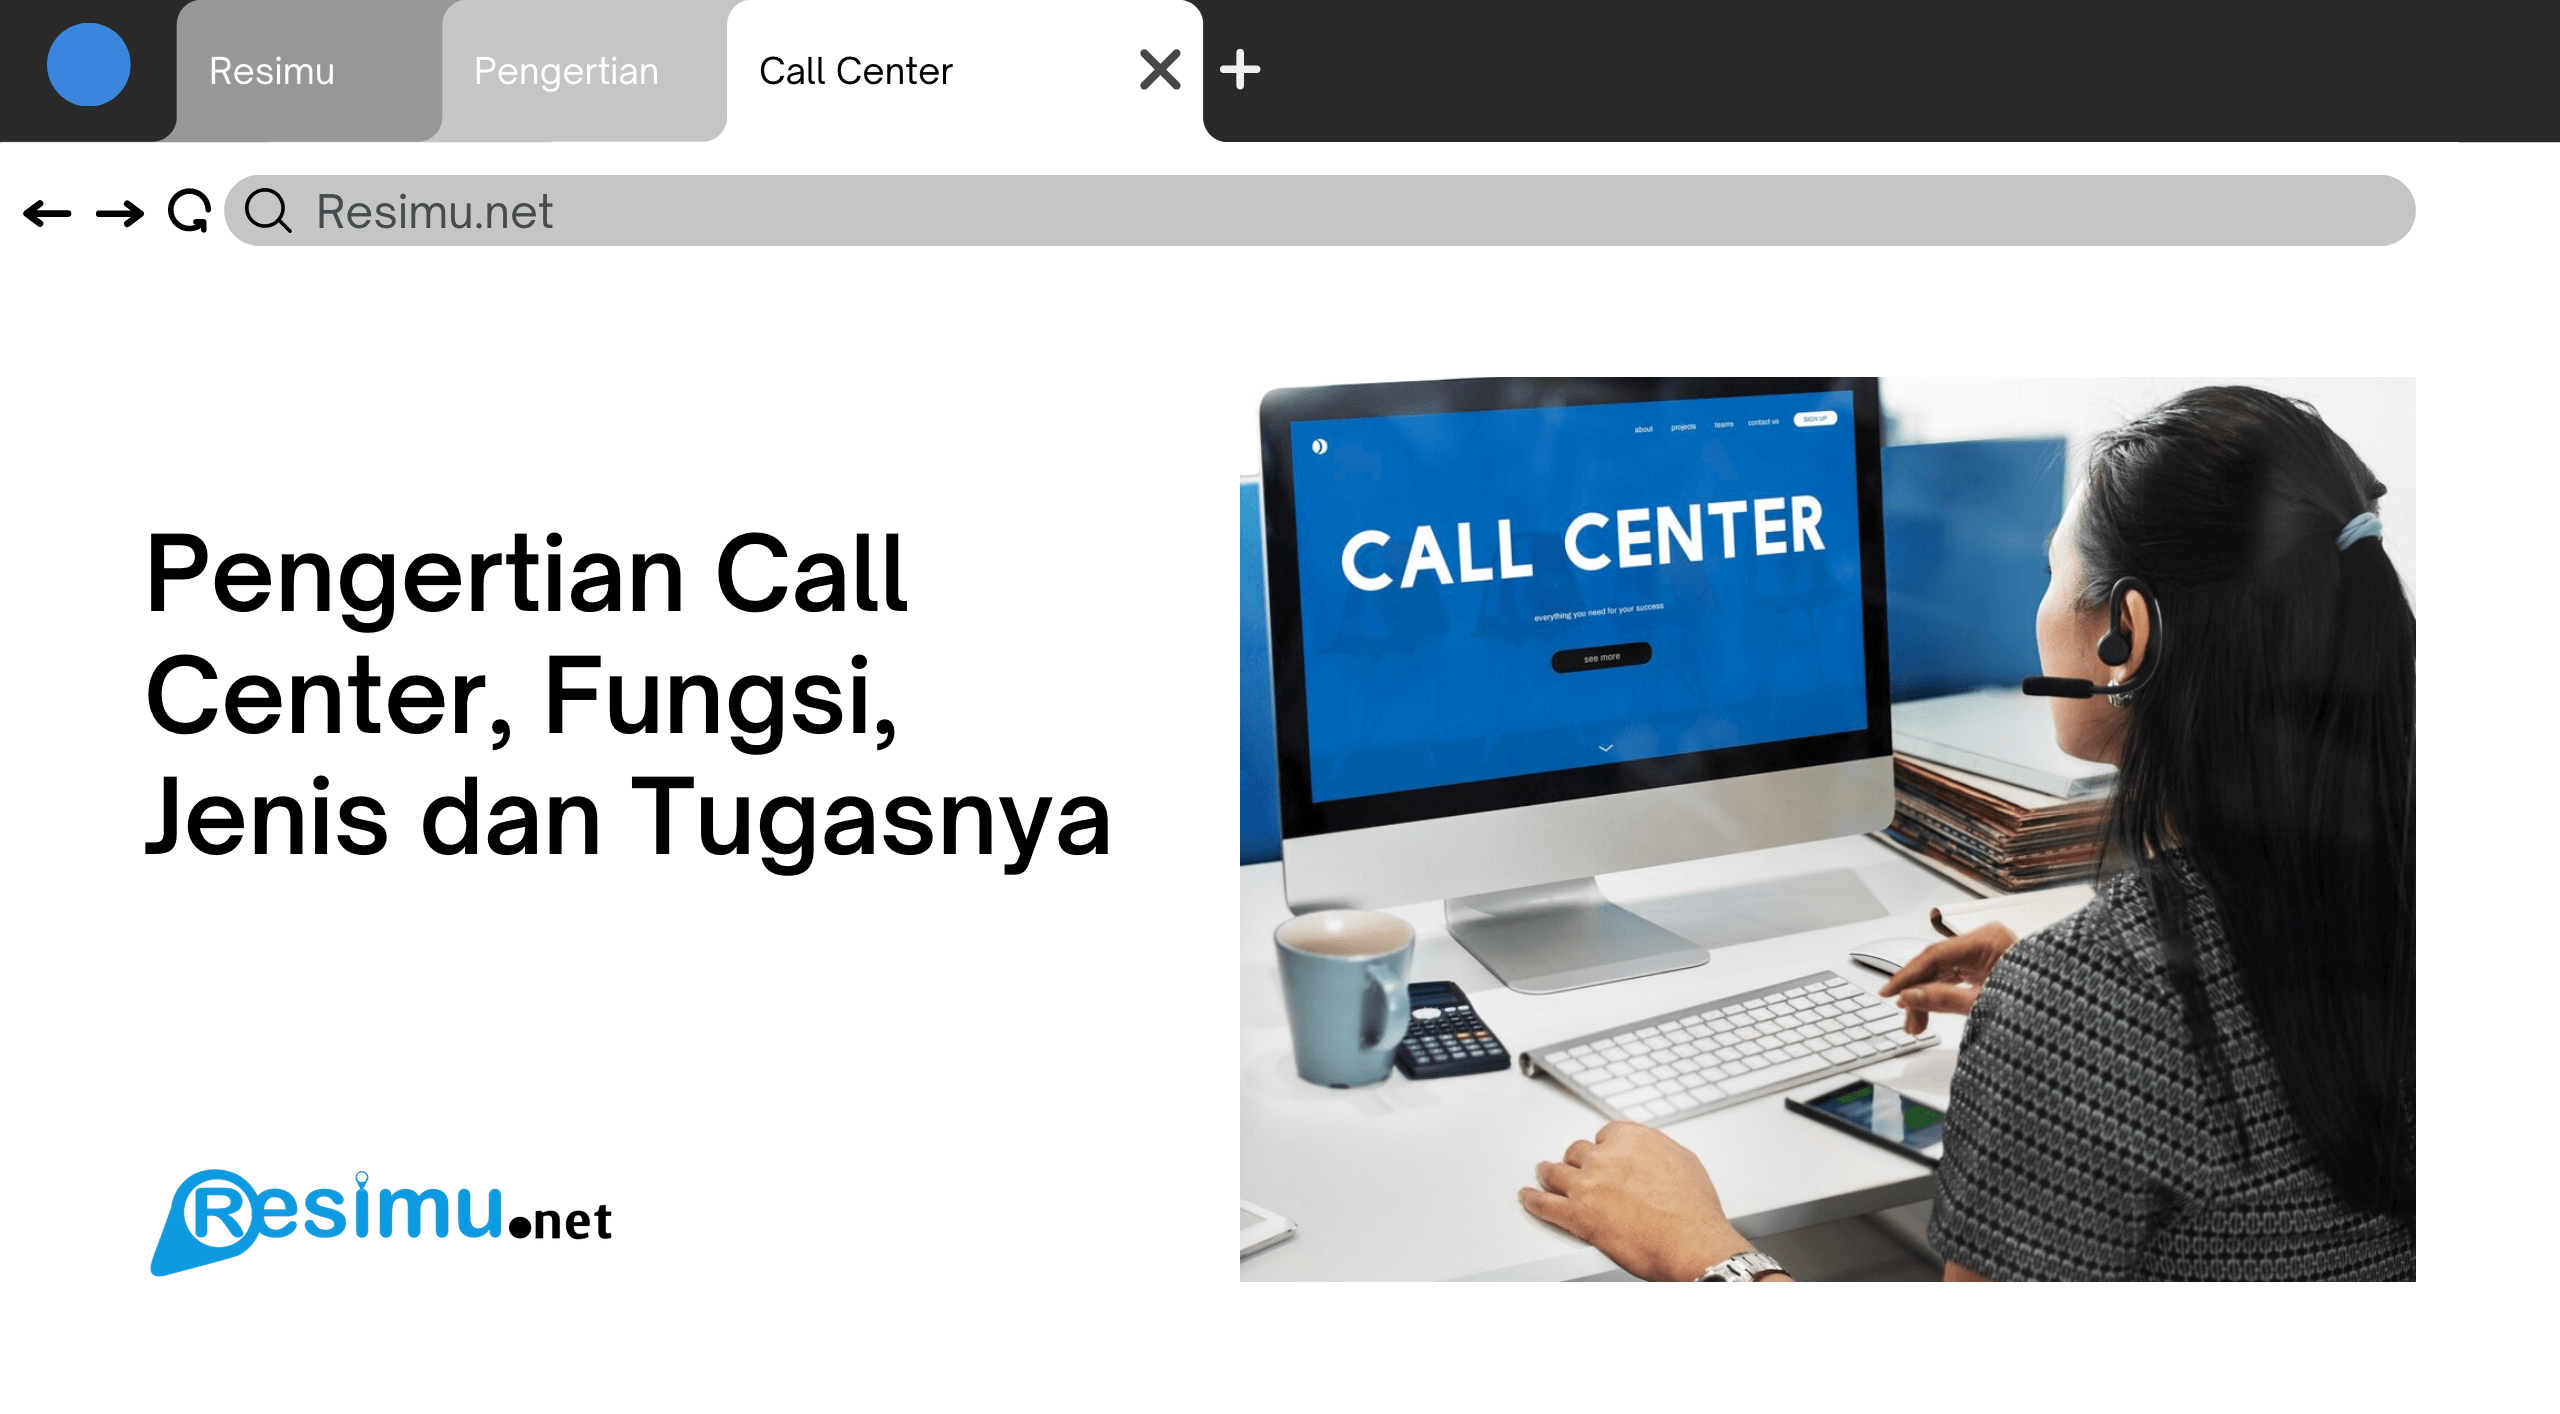 Pengertian Call Center, Fungsi, Jenis dan Tugasnya